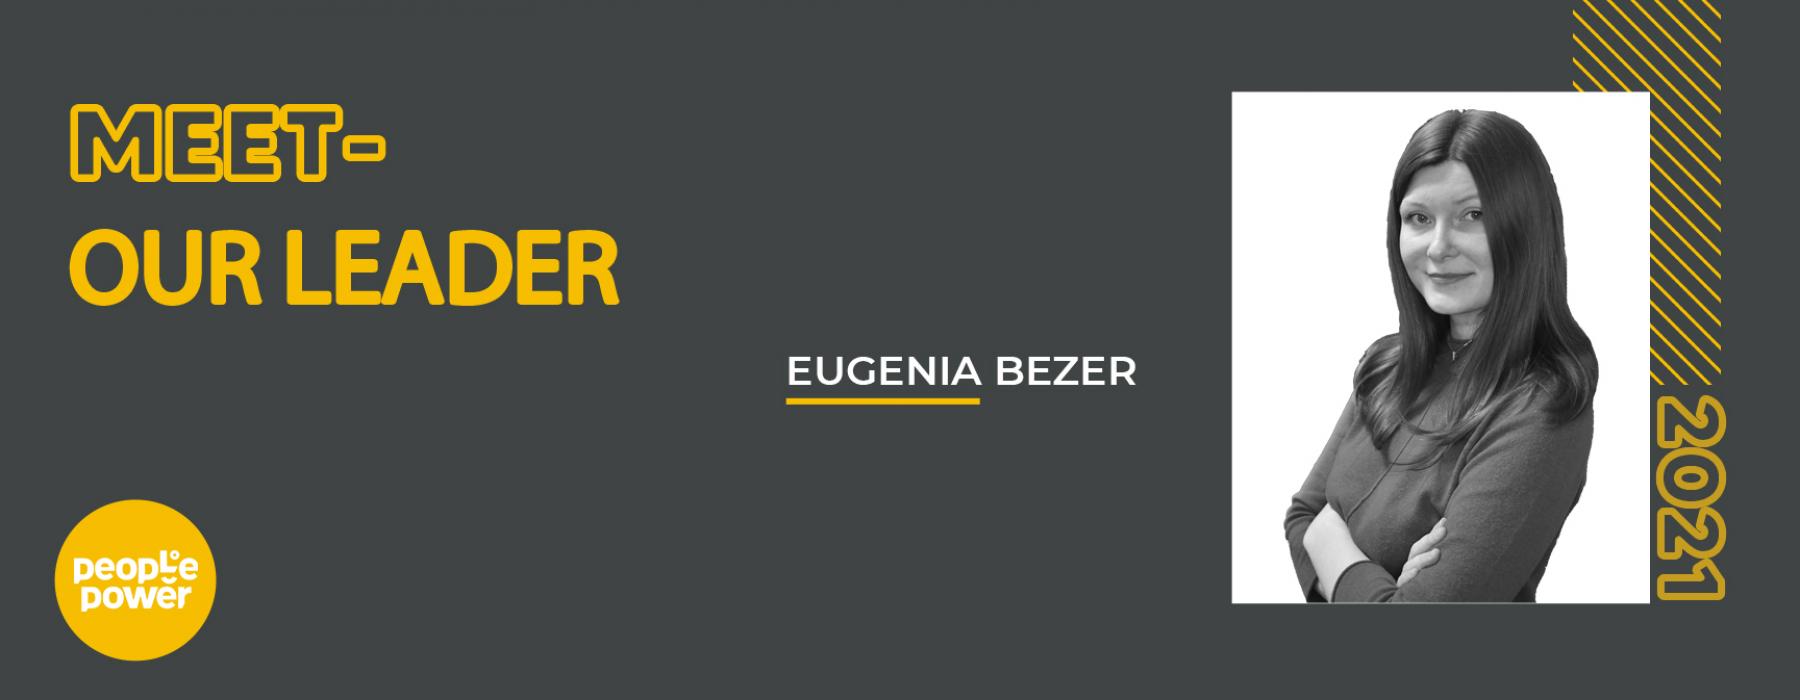 Luna Team Leaderilor- EUGENIA BEZER. O persoană hotărâtă și dedicată care îmbrațișează schimbările de fiecare dată.